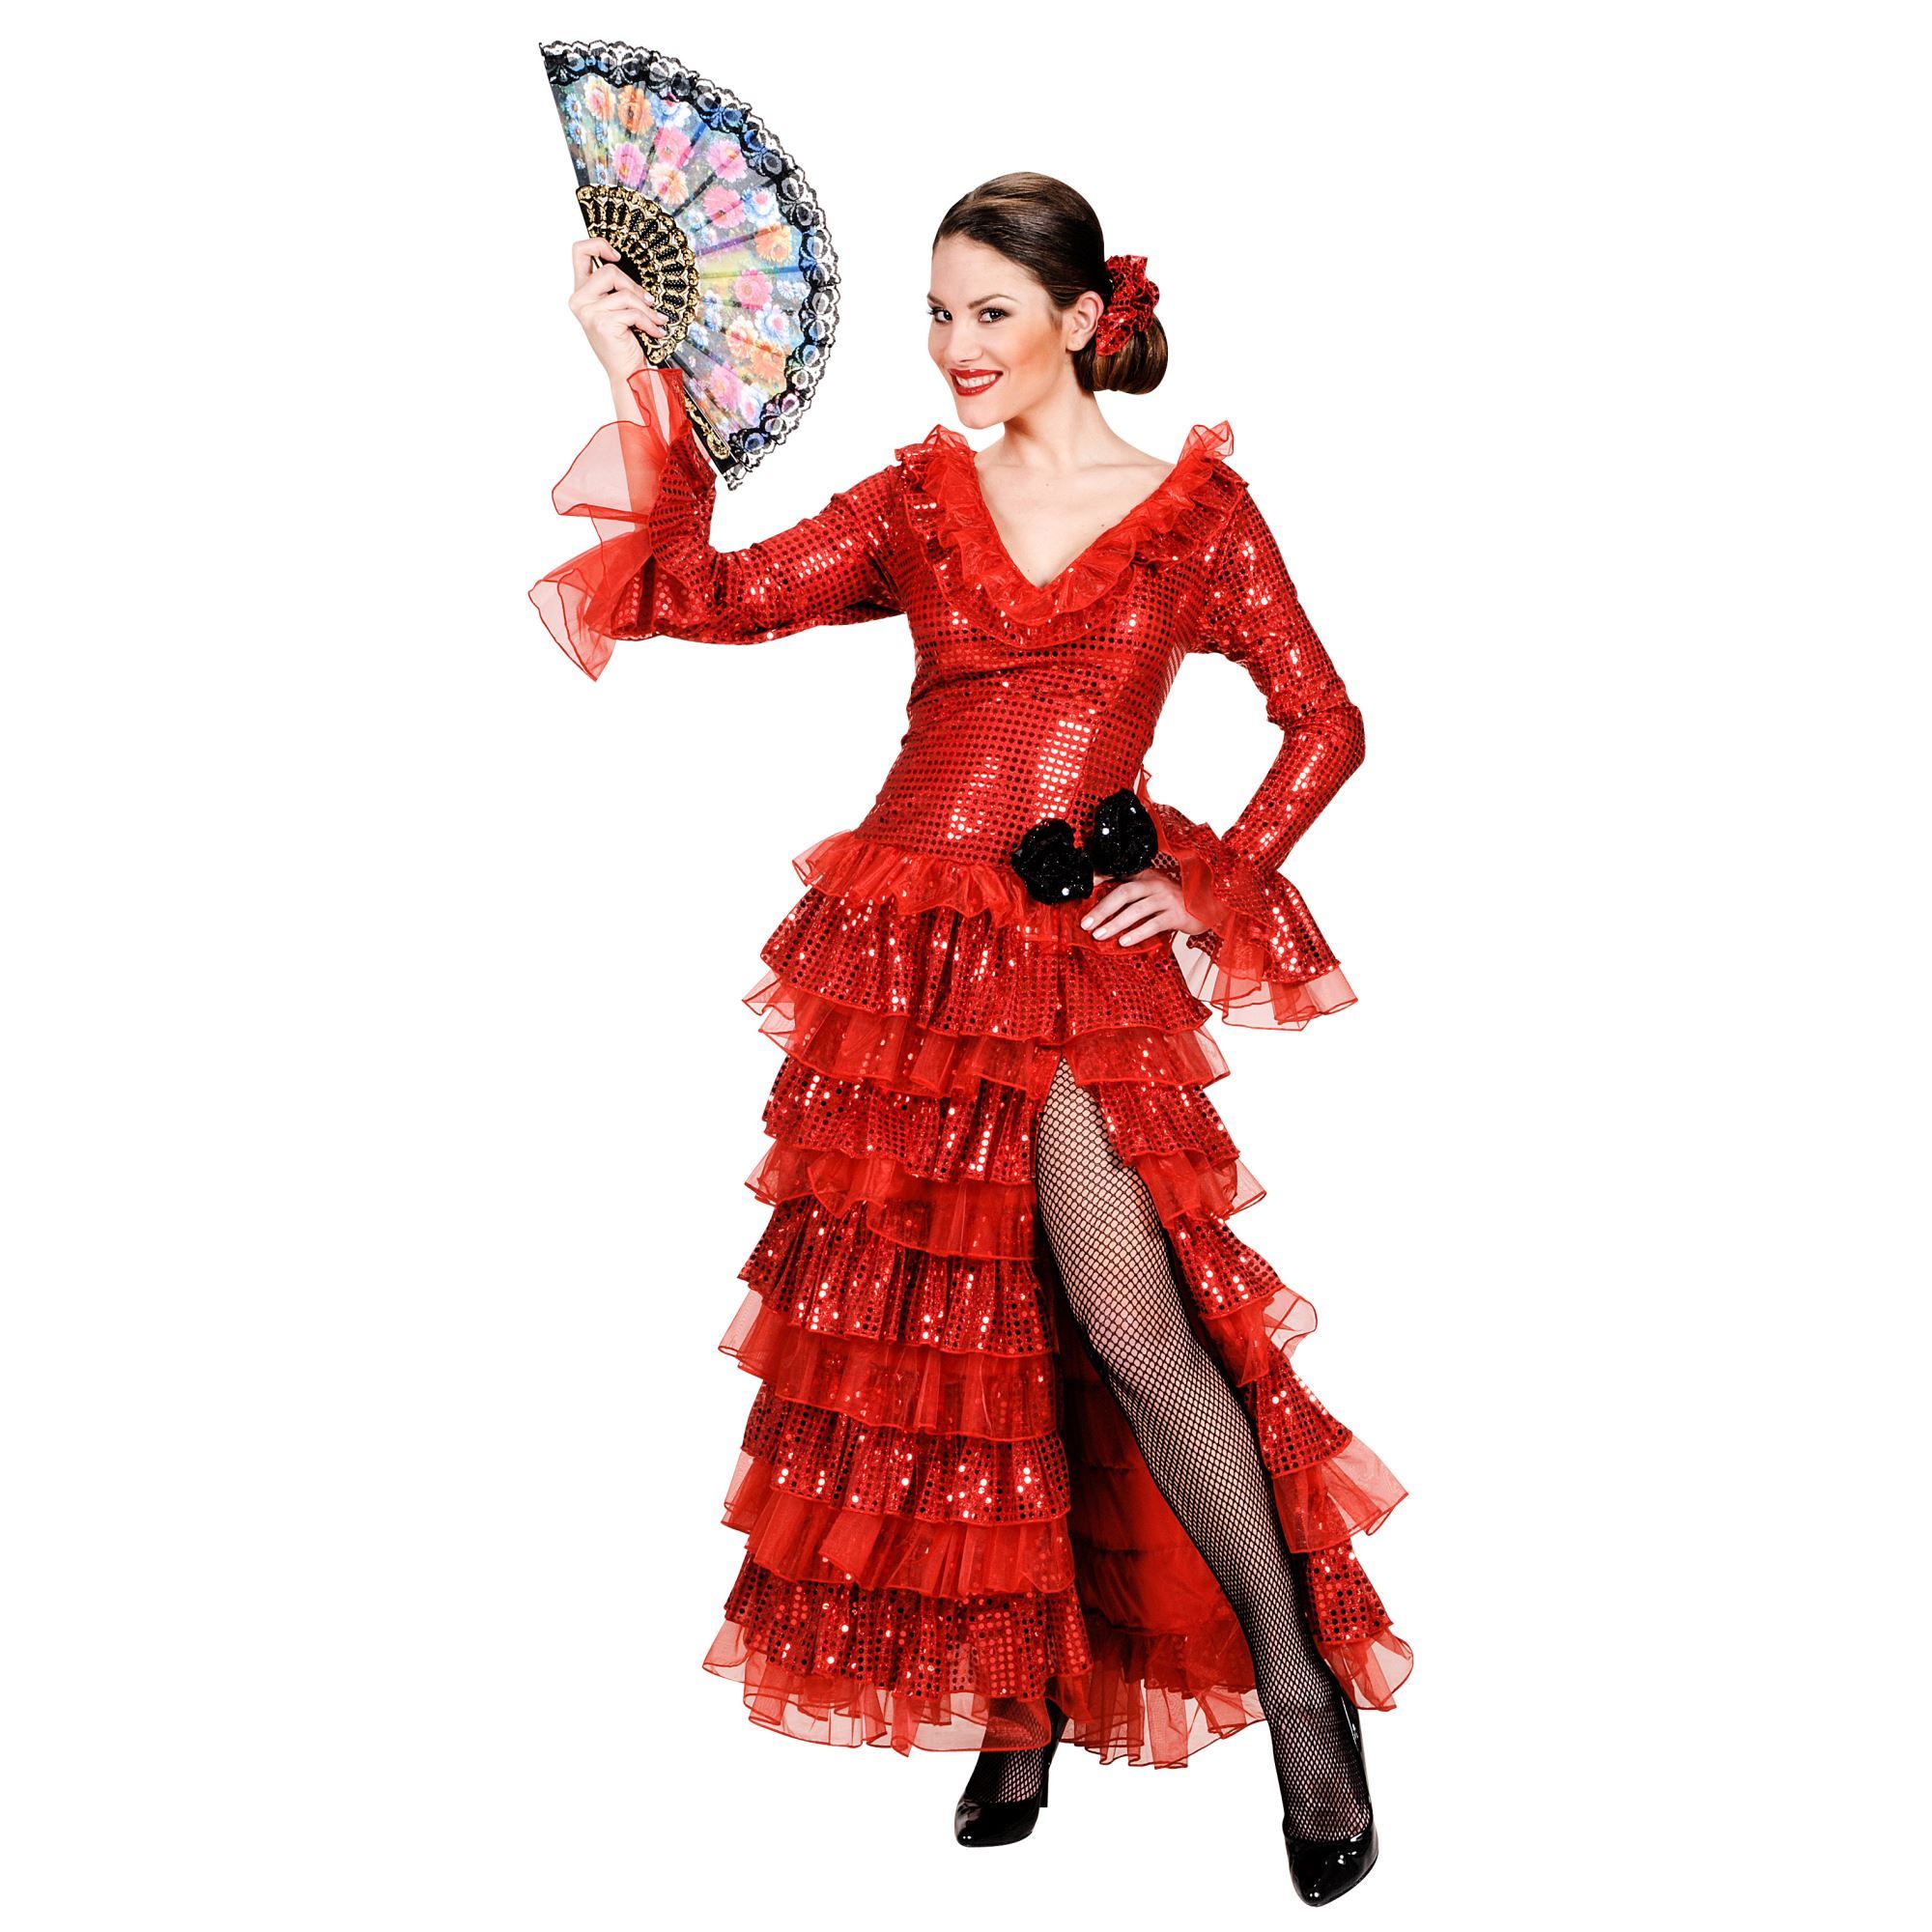 Spiksplinternieuw Spaanse senorita pailetten jurk luxe Goedkoop LG-89